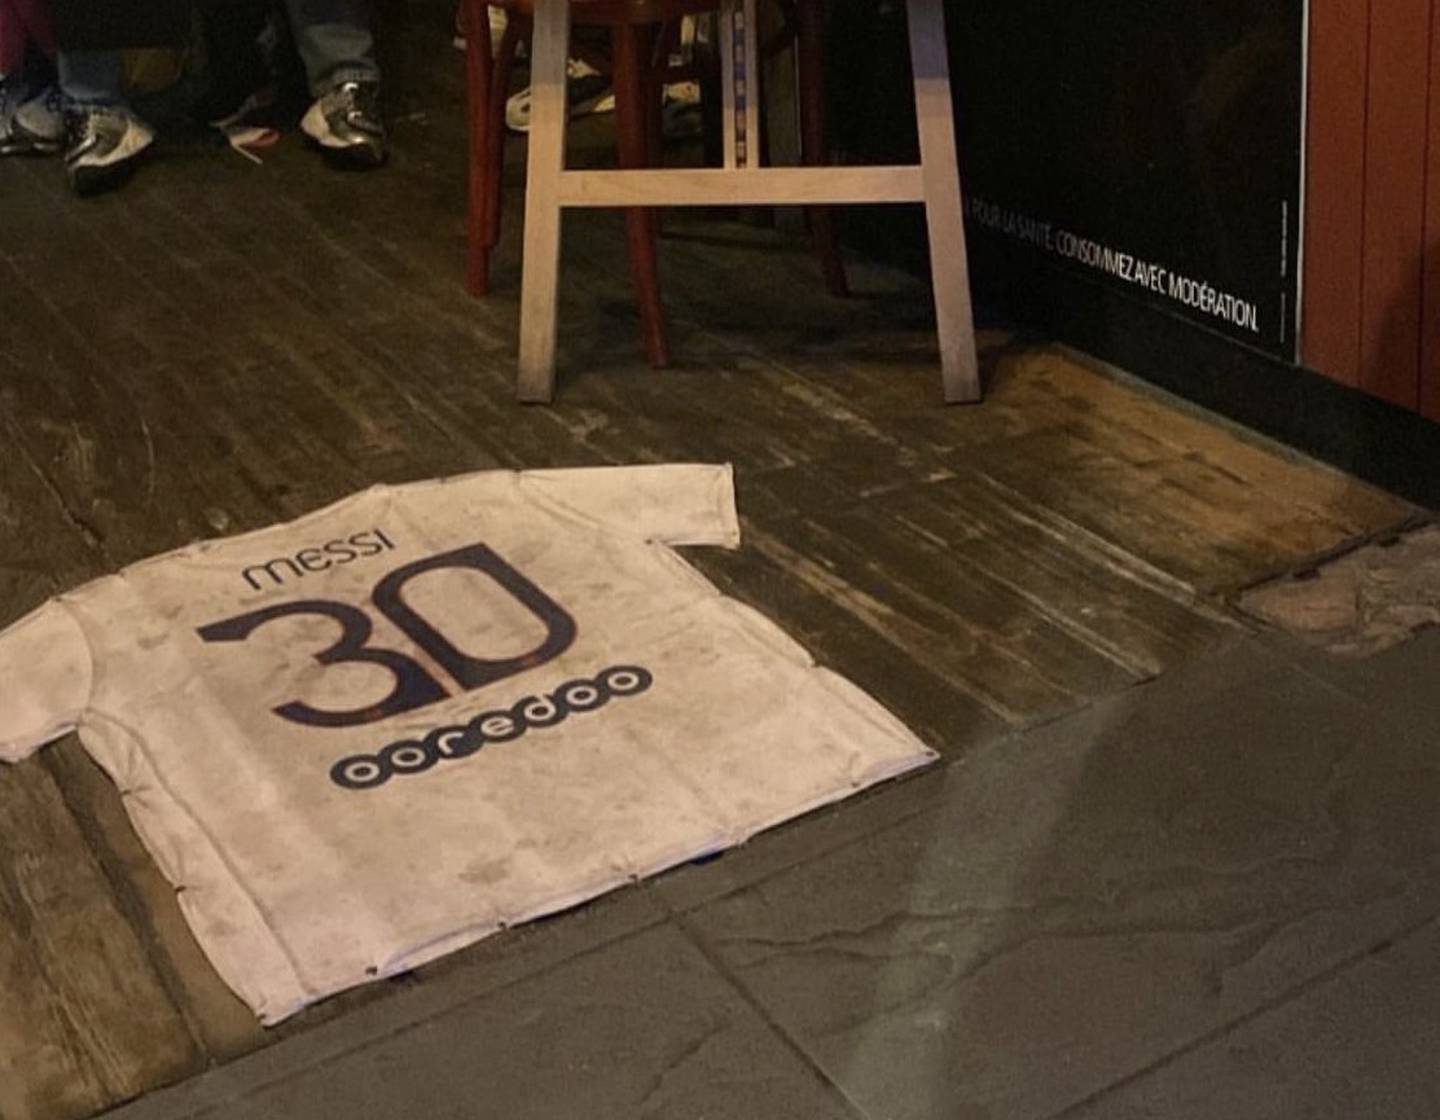 La camiseta de Messi fue puesta a la entrada del bar. foto Twitter.